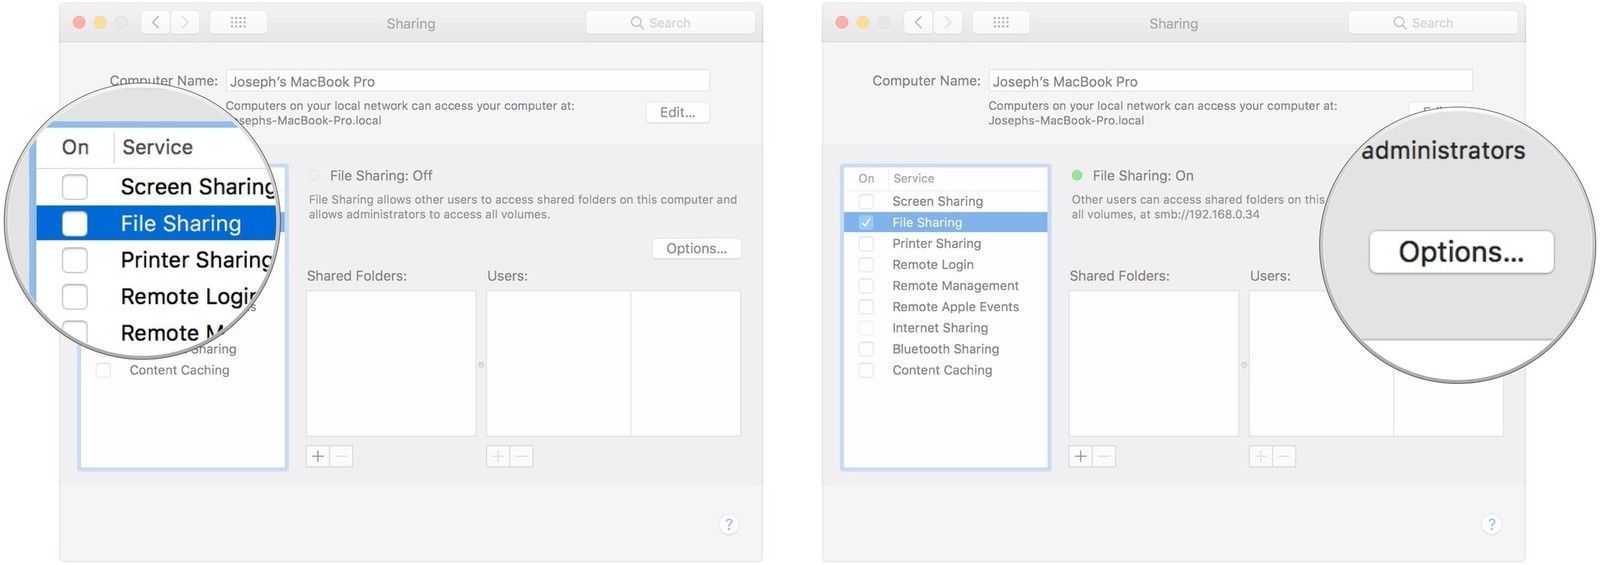 Как использовать icloud drive для синхронизации файлов между mac, iphone и ipad